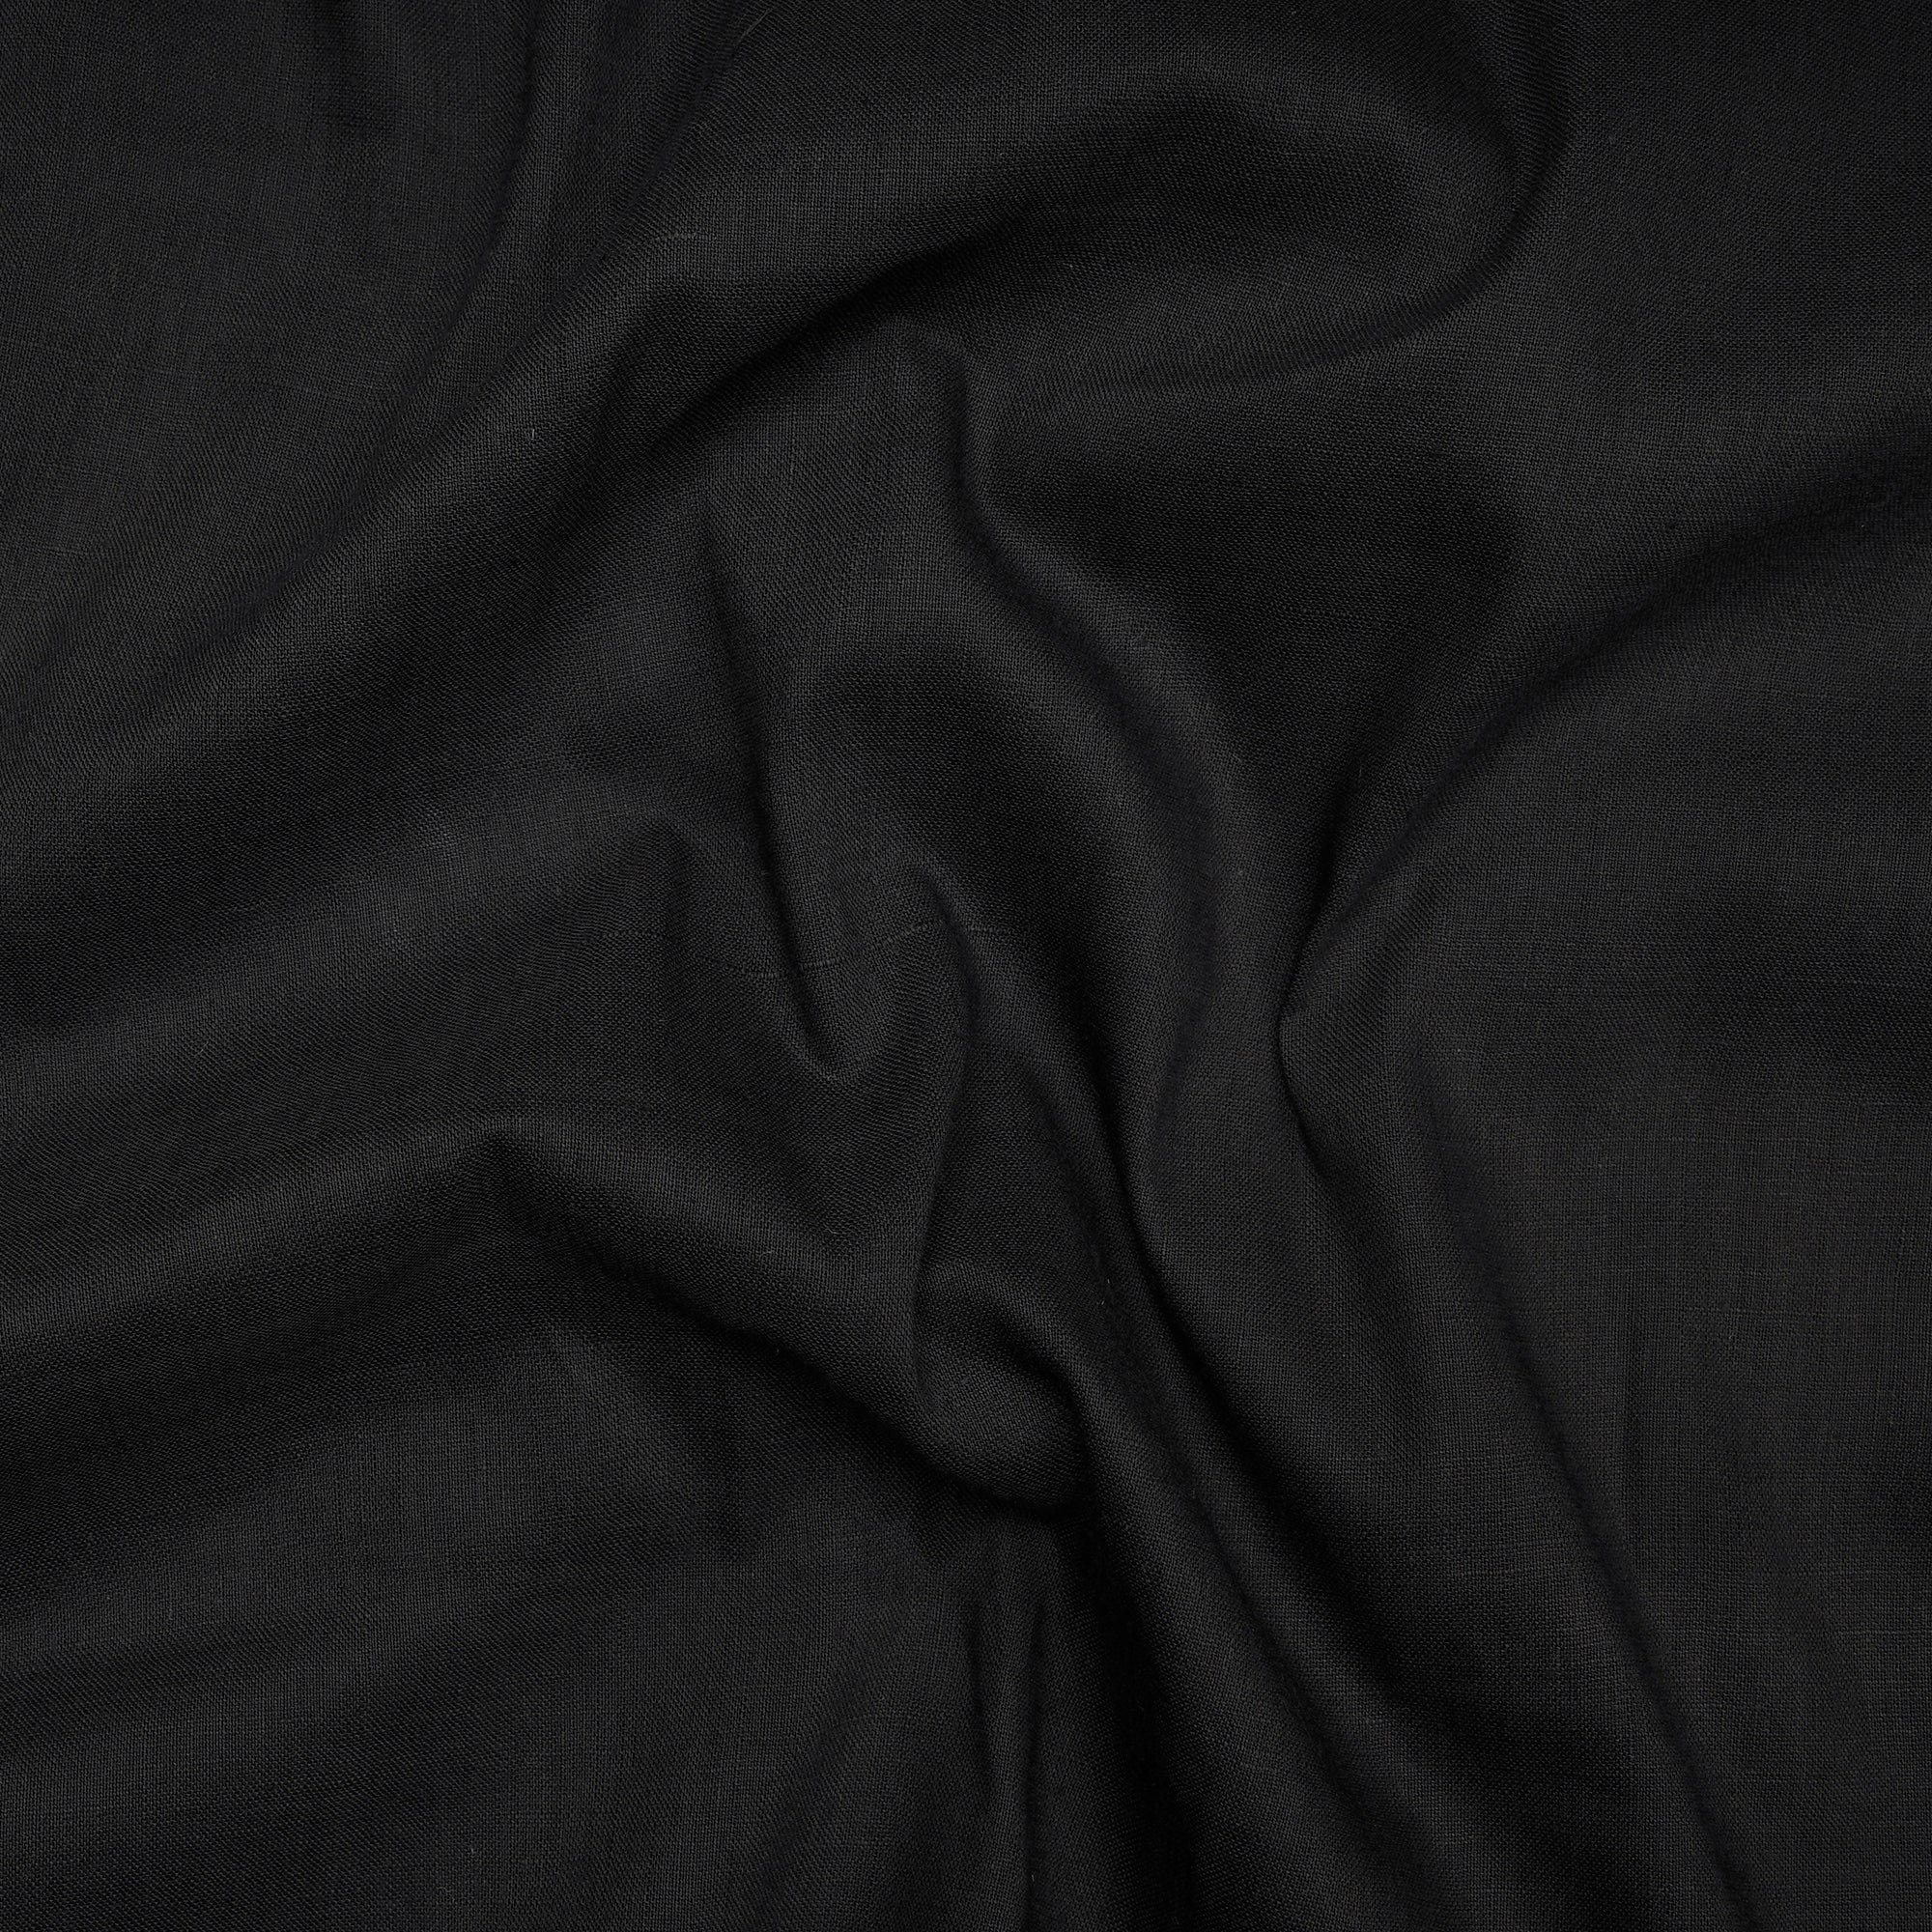 Black Handspun Handwoven Muslin Cotton Fabric